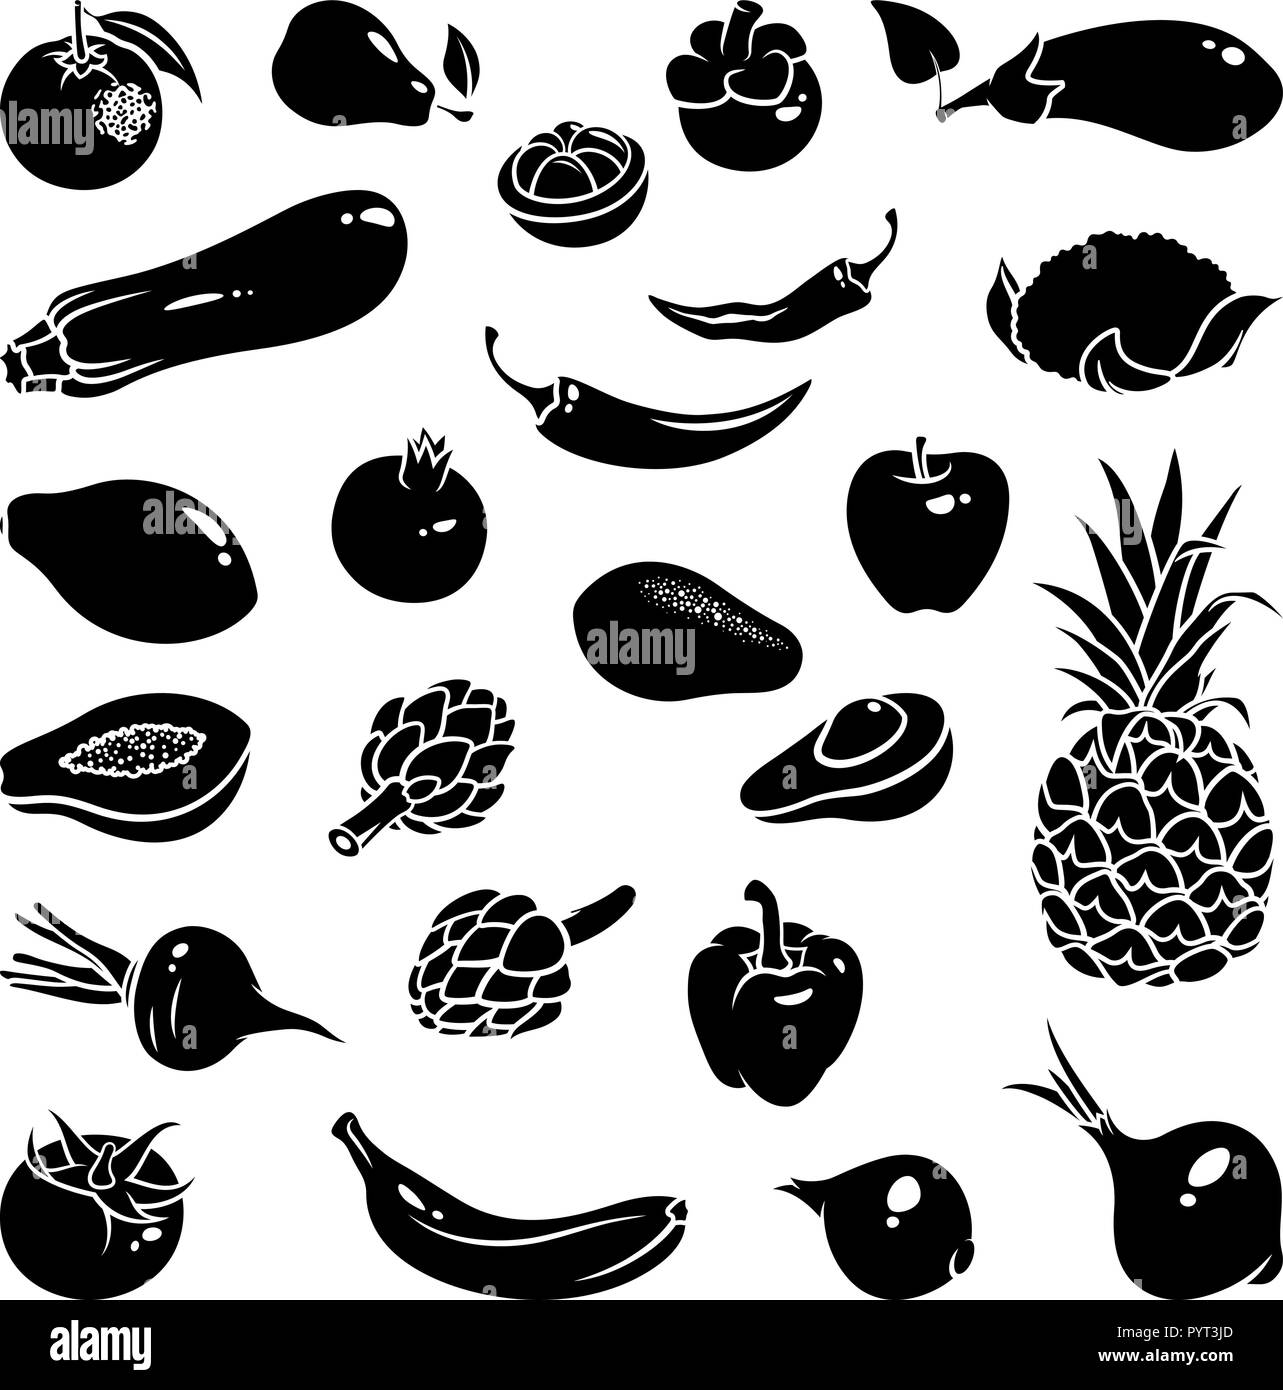 Icônes de fruits et légumes : le mangoustan, poivre, piment, poire, banane, avocat, orange, de grenade, de la courgette, la papaye, l'artichaut, pomme, ananas, Illustration de Vecteur